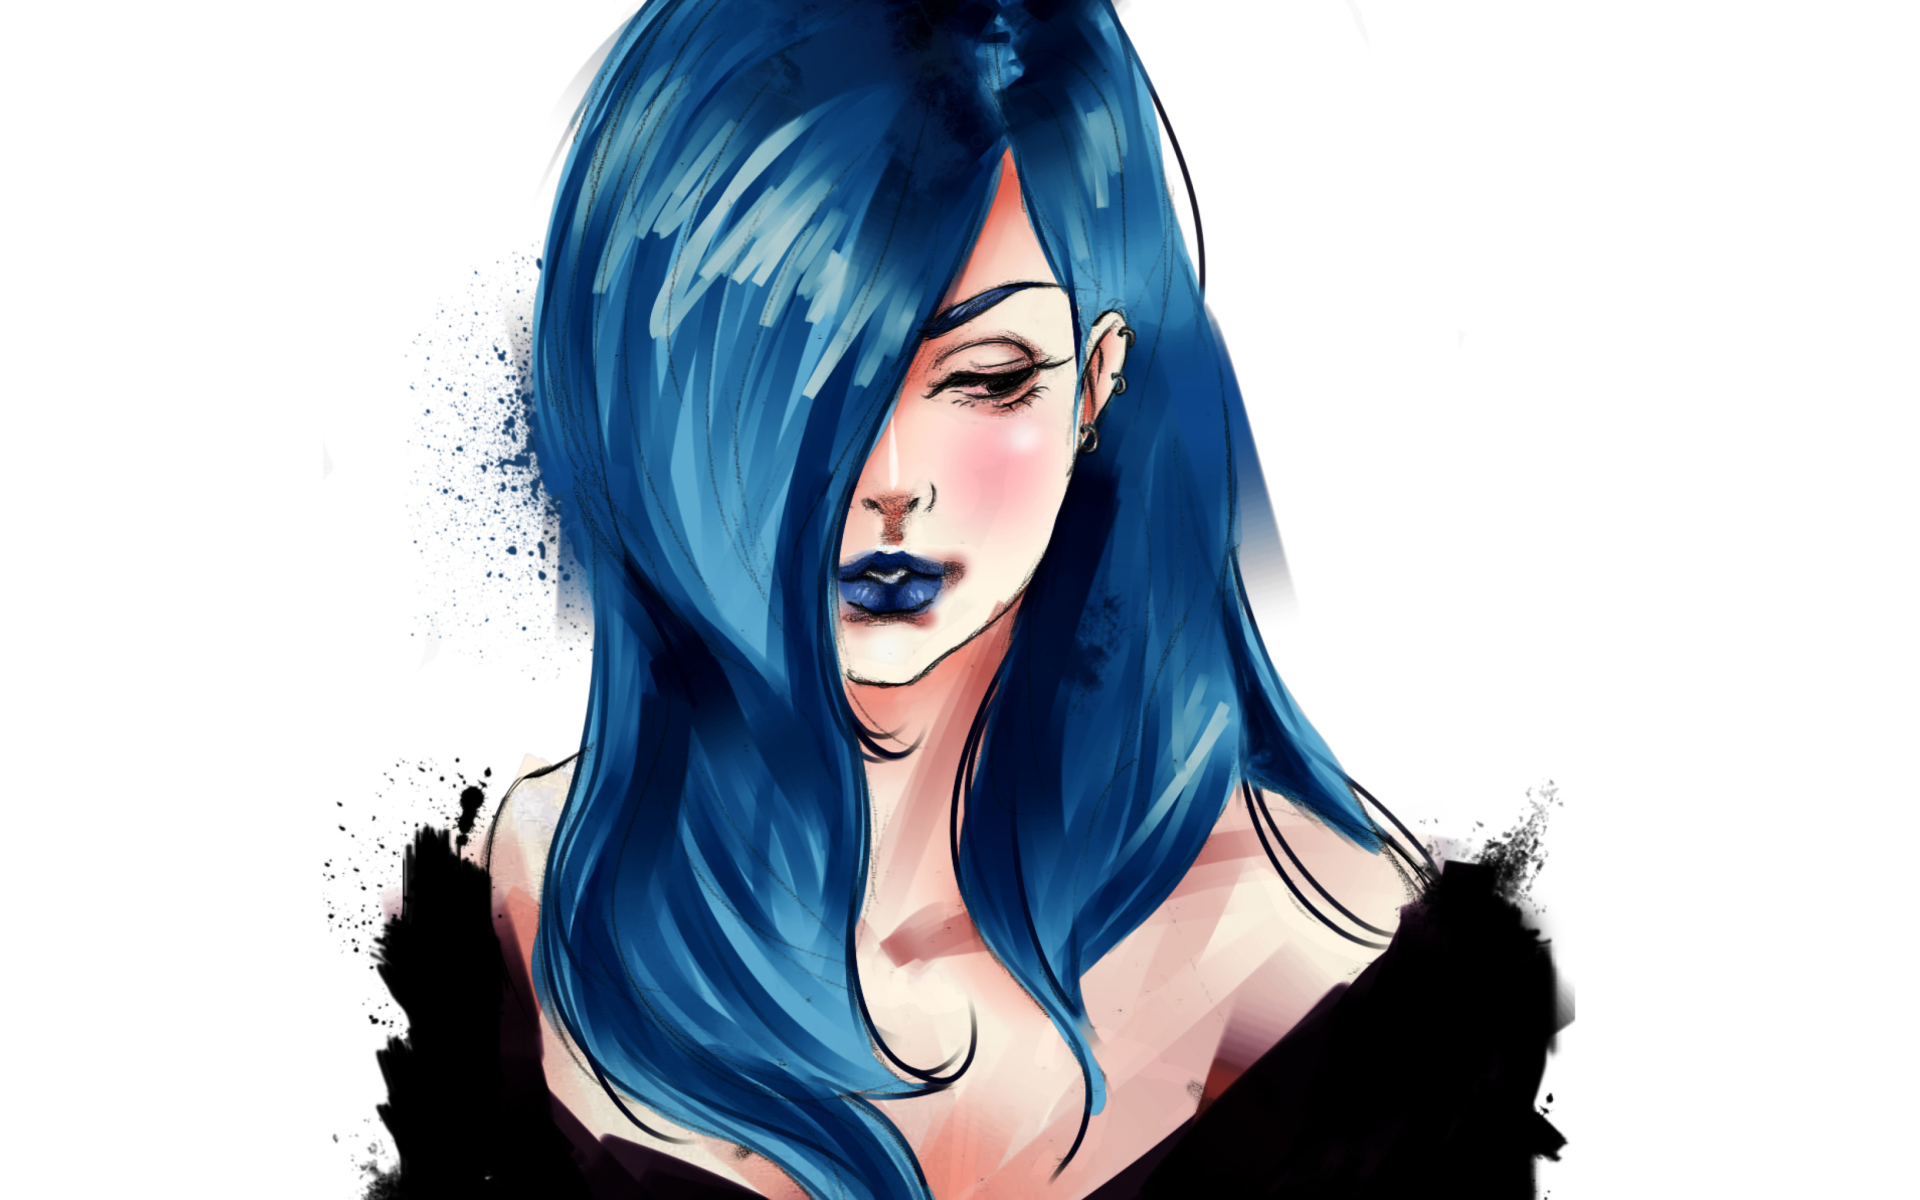 Обои Girl With Blue Hair Painting 1920x1200